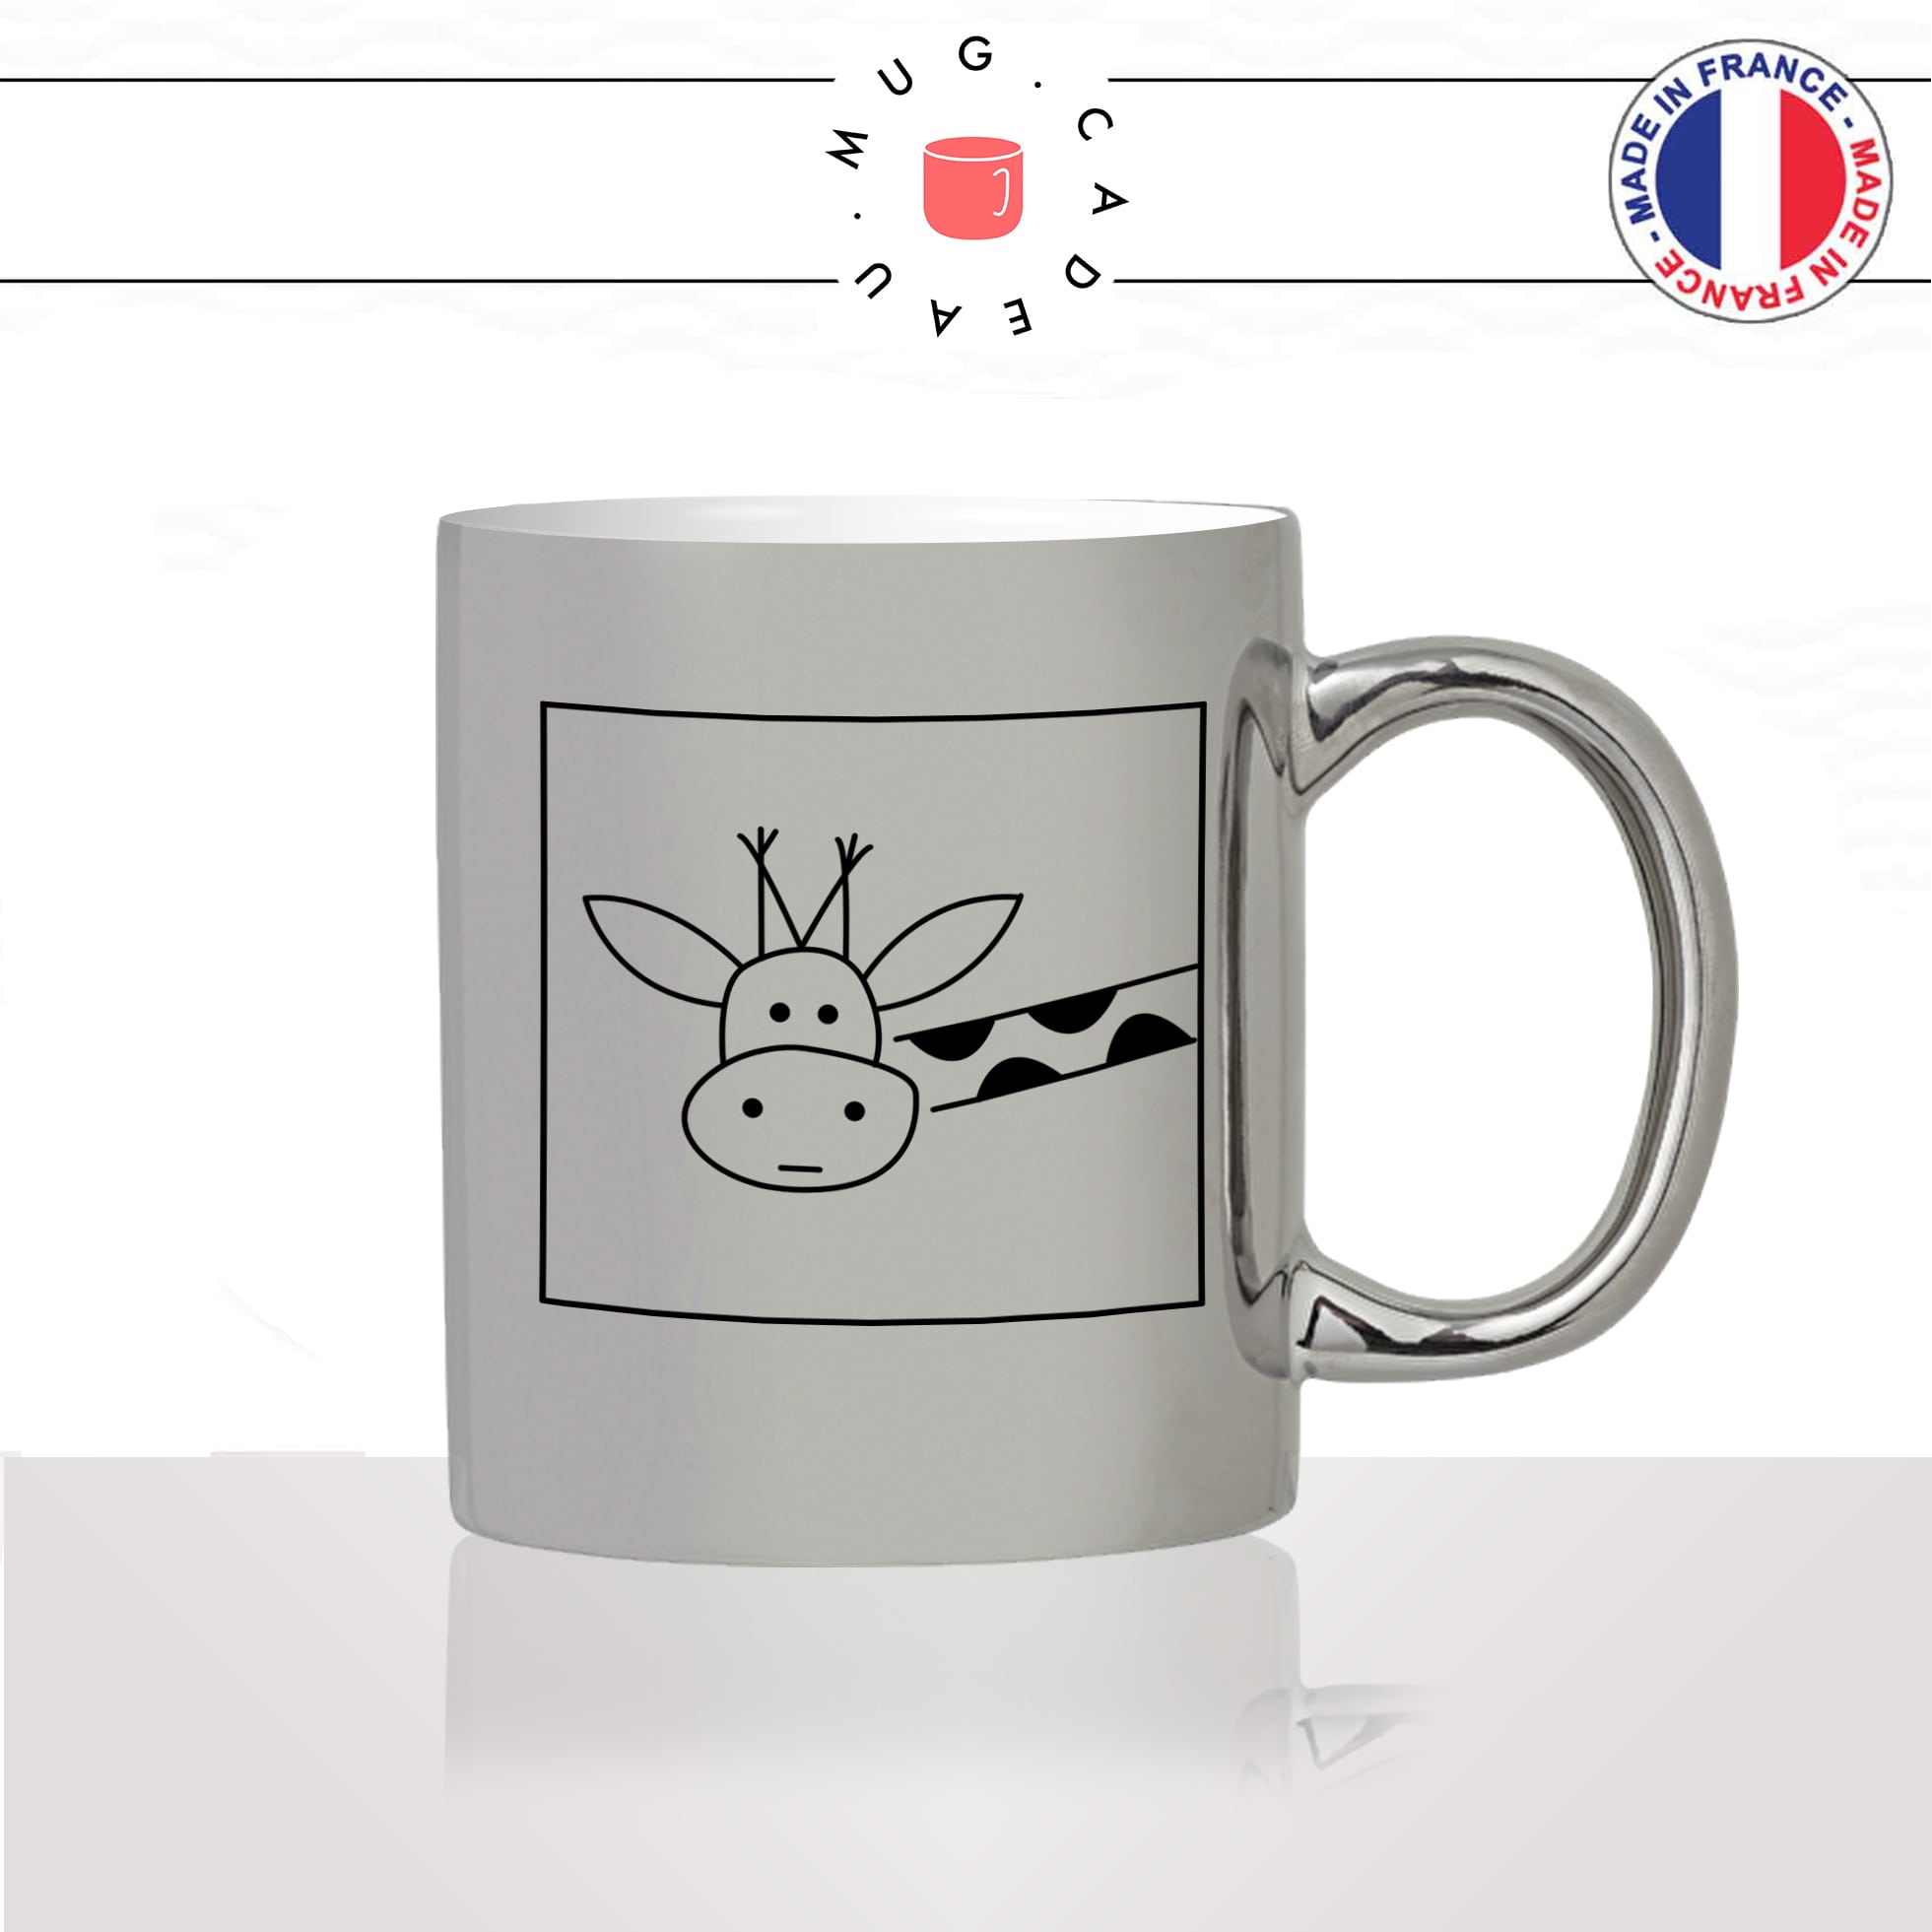 mug-tasse-silver-argenté-argent-giraphe-coucou-tete-cou-drole-mignon-animal-noir-fun-café-thé-idée-cadeau-original-personnalisé2-min